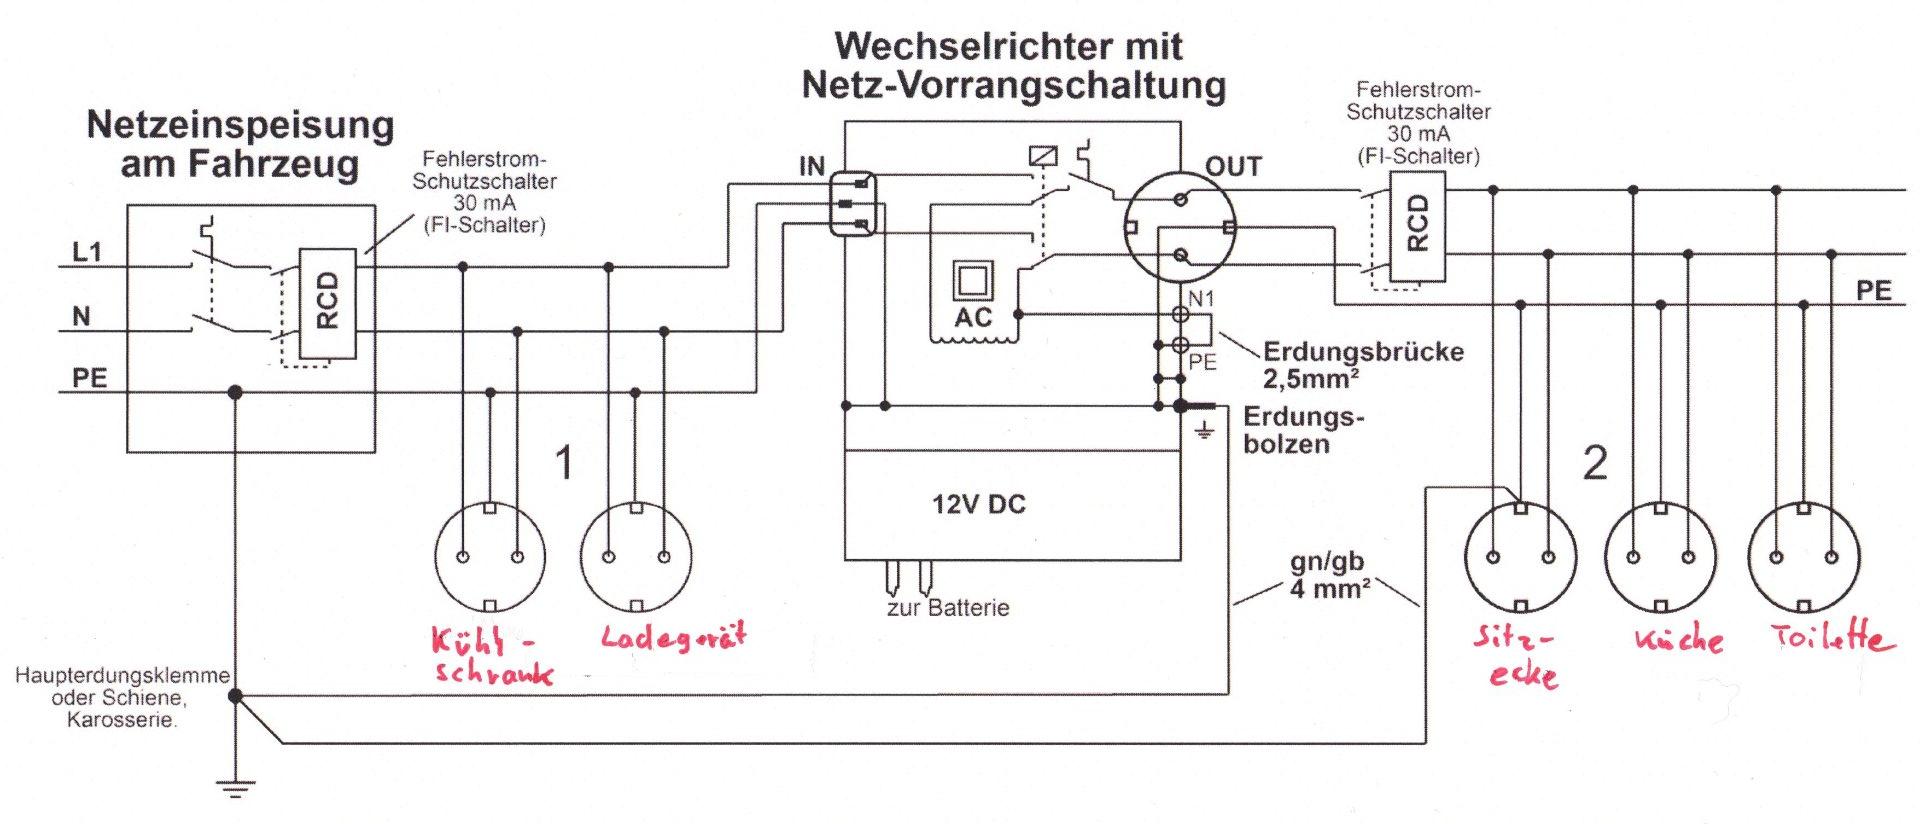 Stromlaufplan Wechselrichter 230 V.jpeg